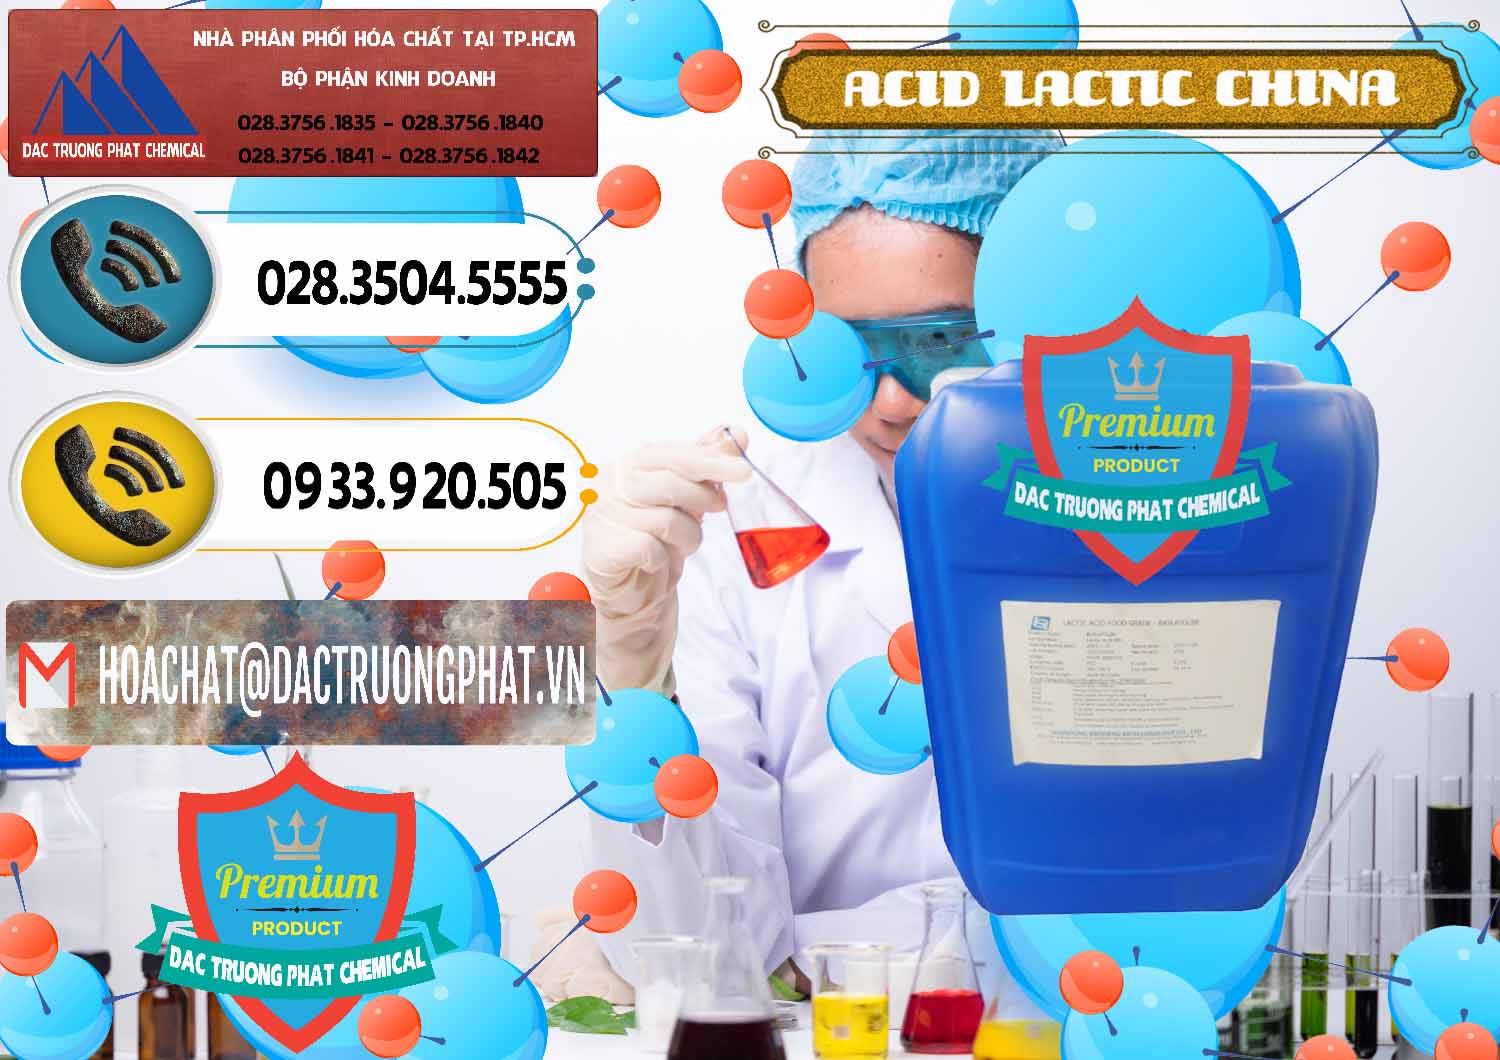 Cty bán & phân phối Acid Lactic – Axit Lactic Trung Quốc China - 0374 - Cty chuyên nhập khẩu ( phân phối ) hóa chất tại TP.HCM - hoachatdetnhuom.vn